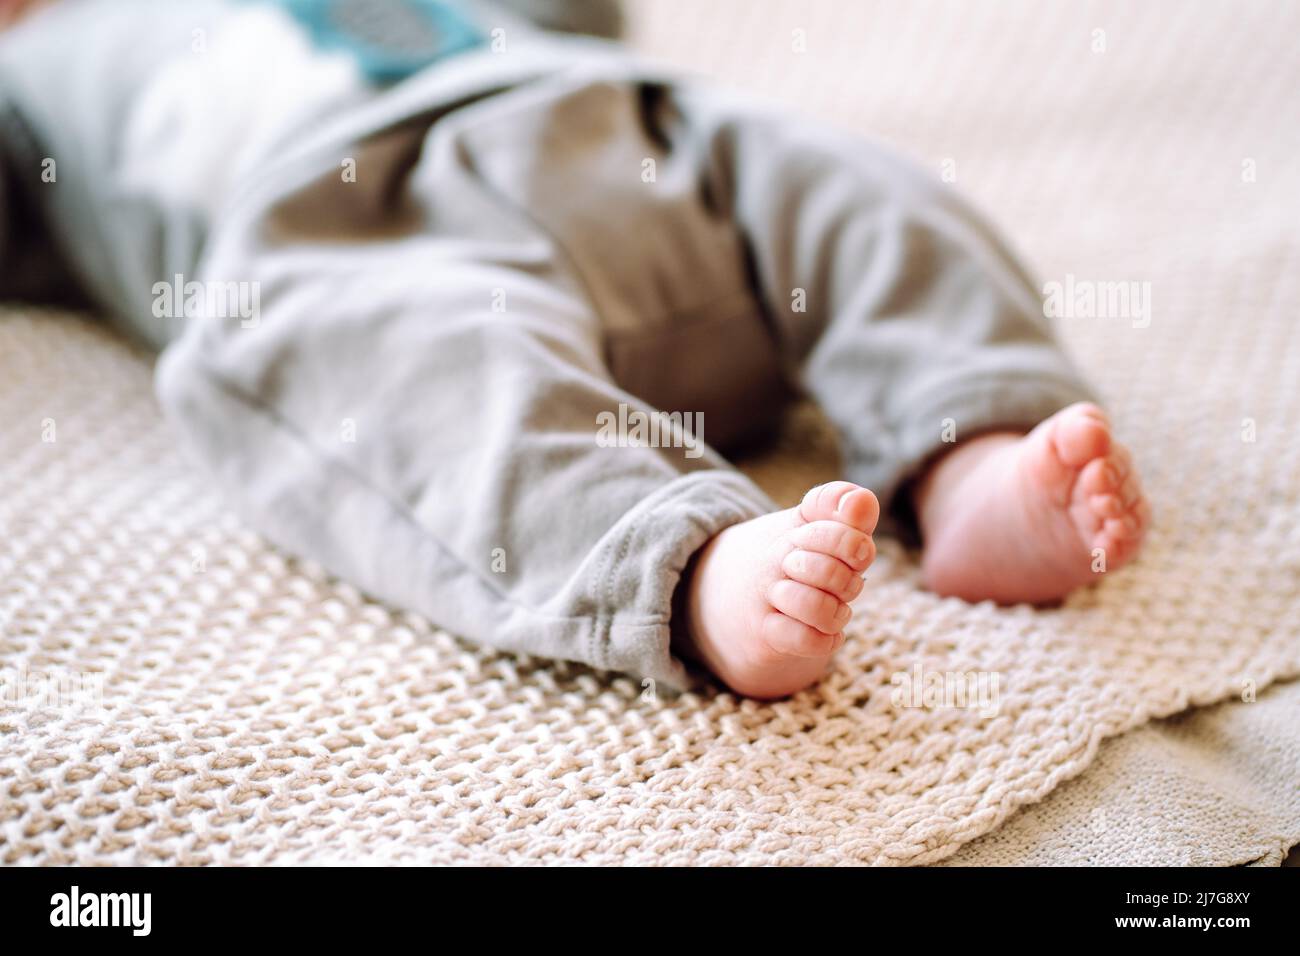 Photo courte du nouveau-né pieds nus portant un body gris couché sur un tissu tricoté en coton beige. Gros plan des petits pieds de bébé sur le lit. Heure du coucher, m Banque D'Images